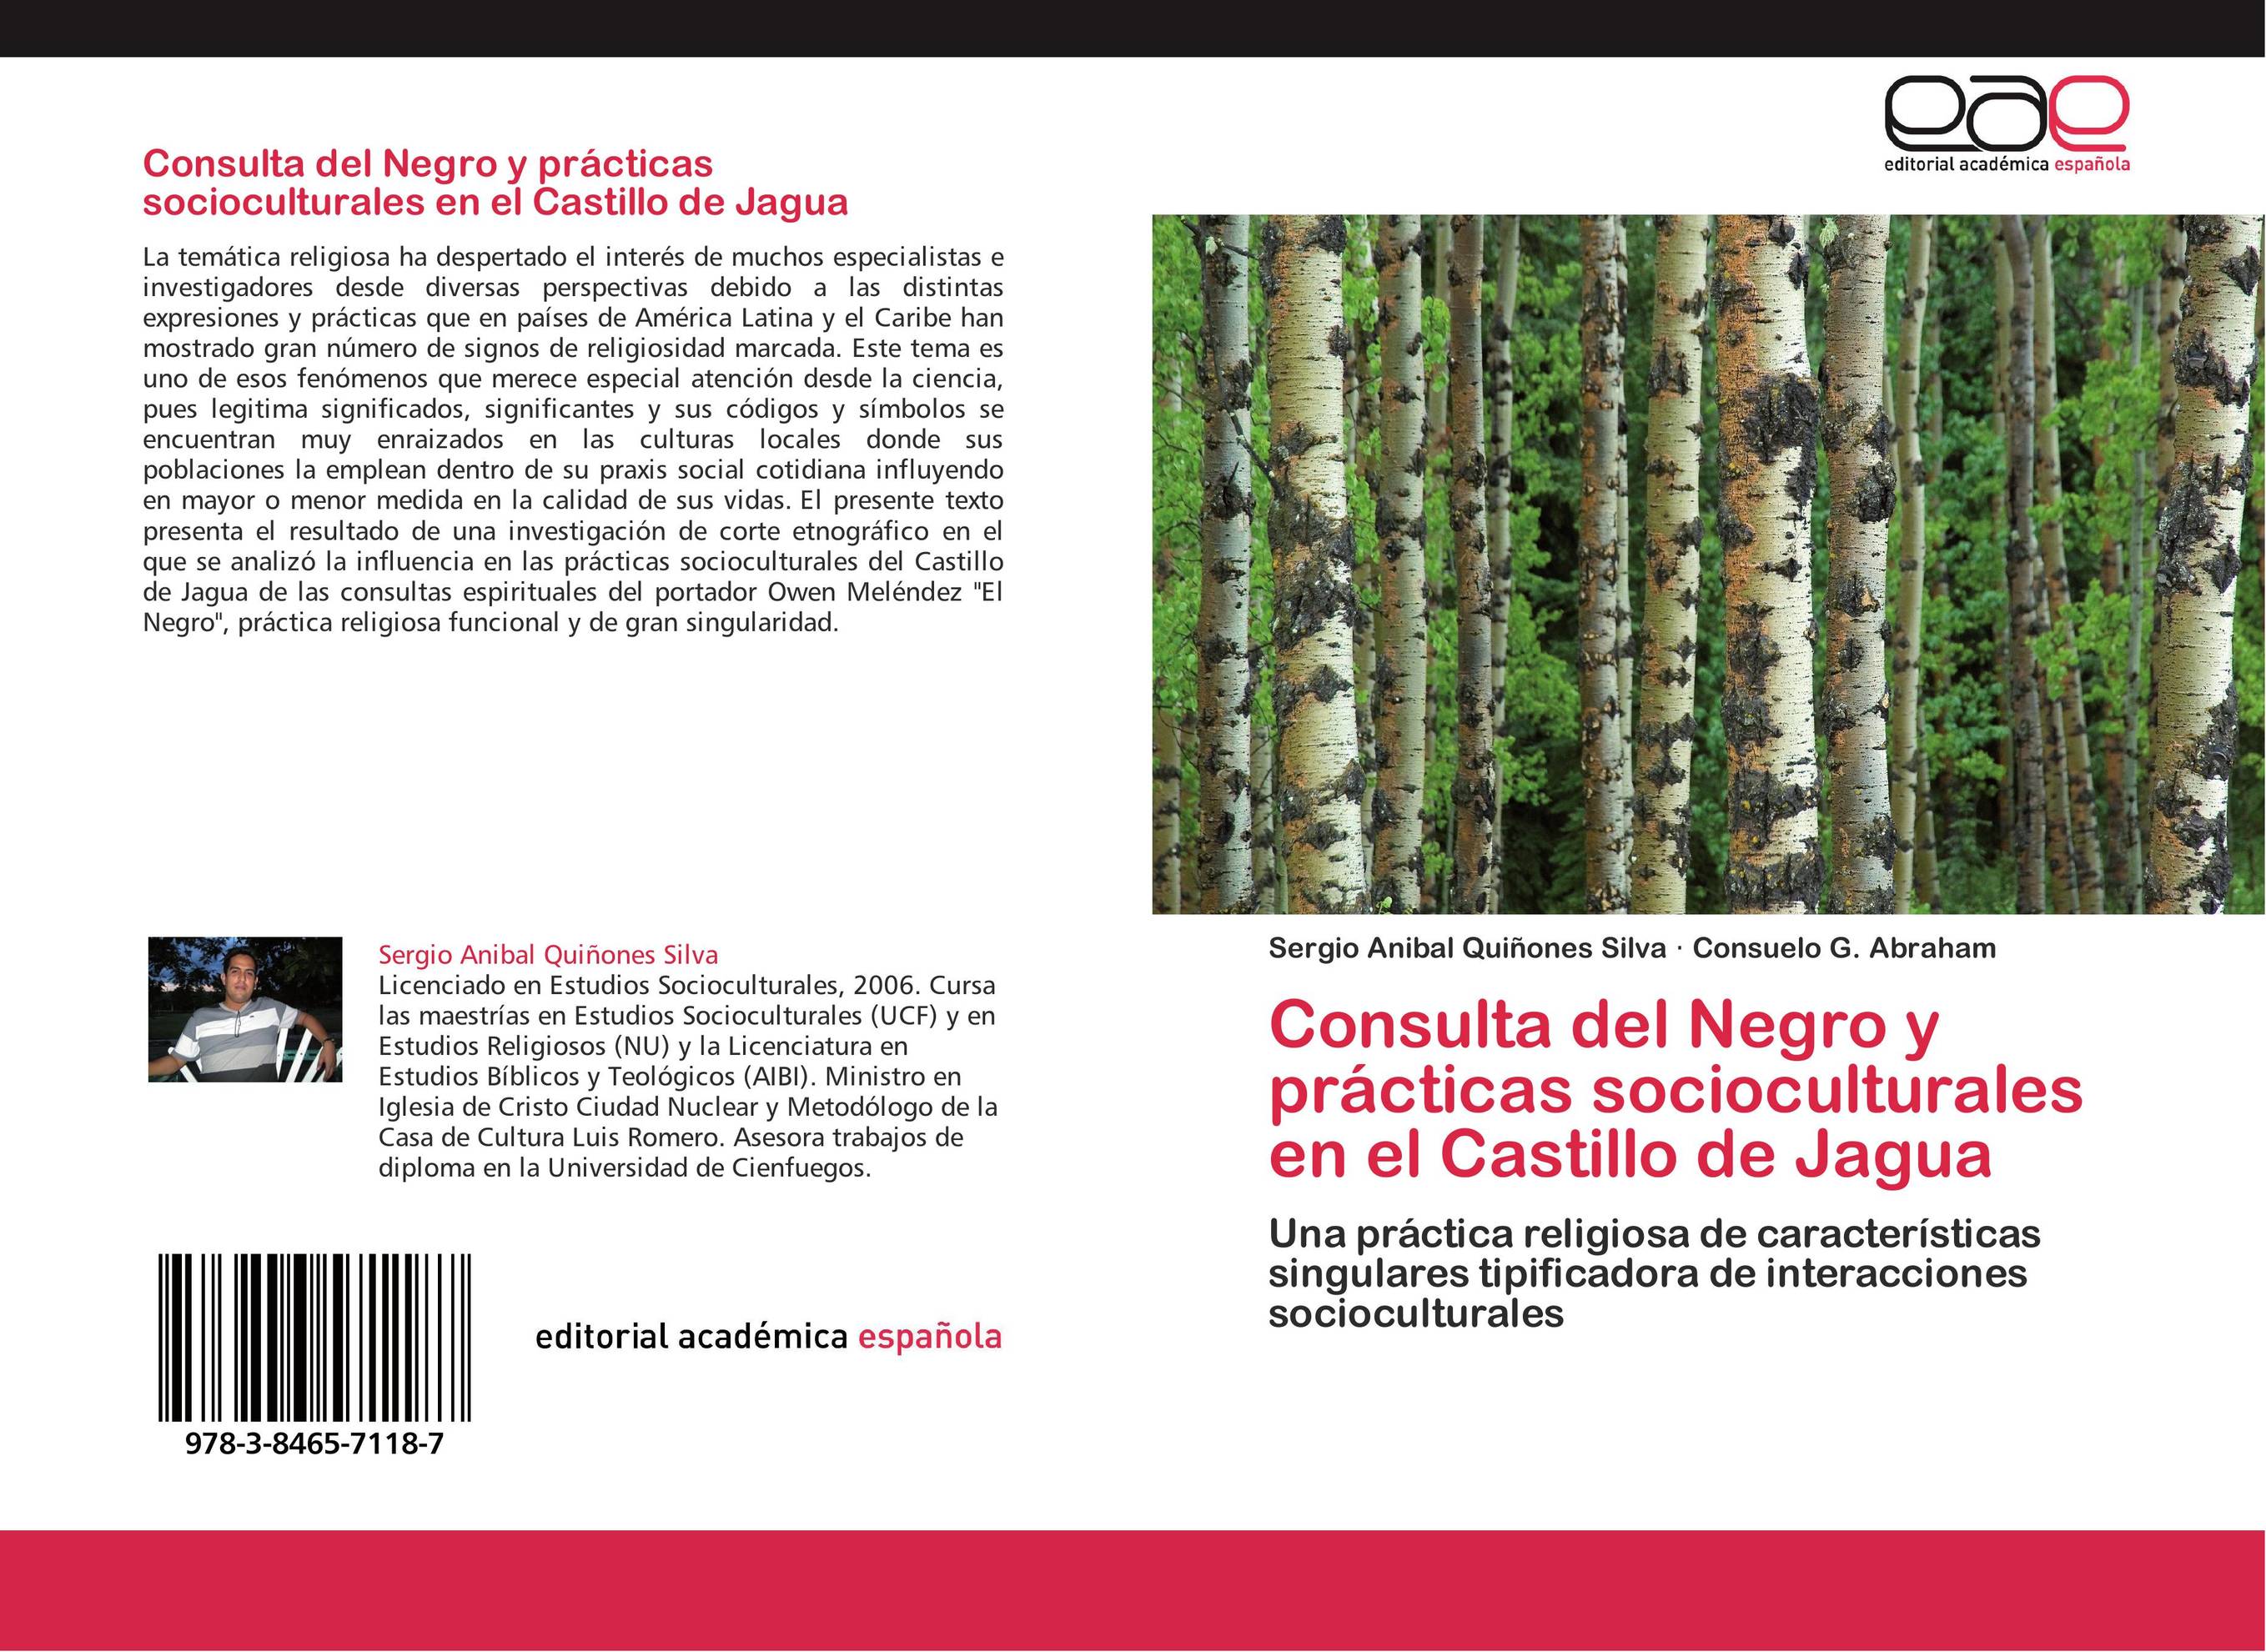 Consulta del Negro y prácticas socioculturales en el Castillo de Jagua